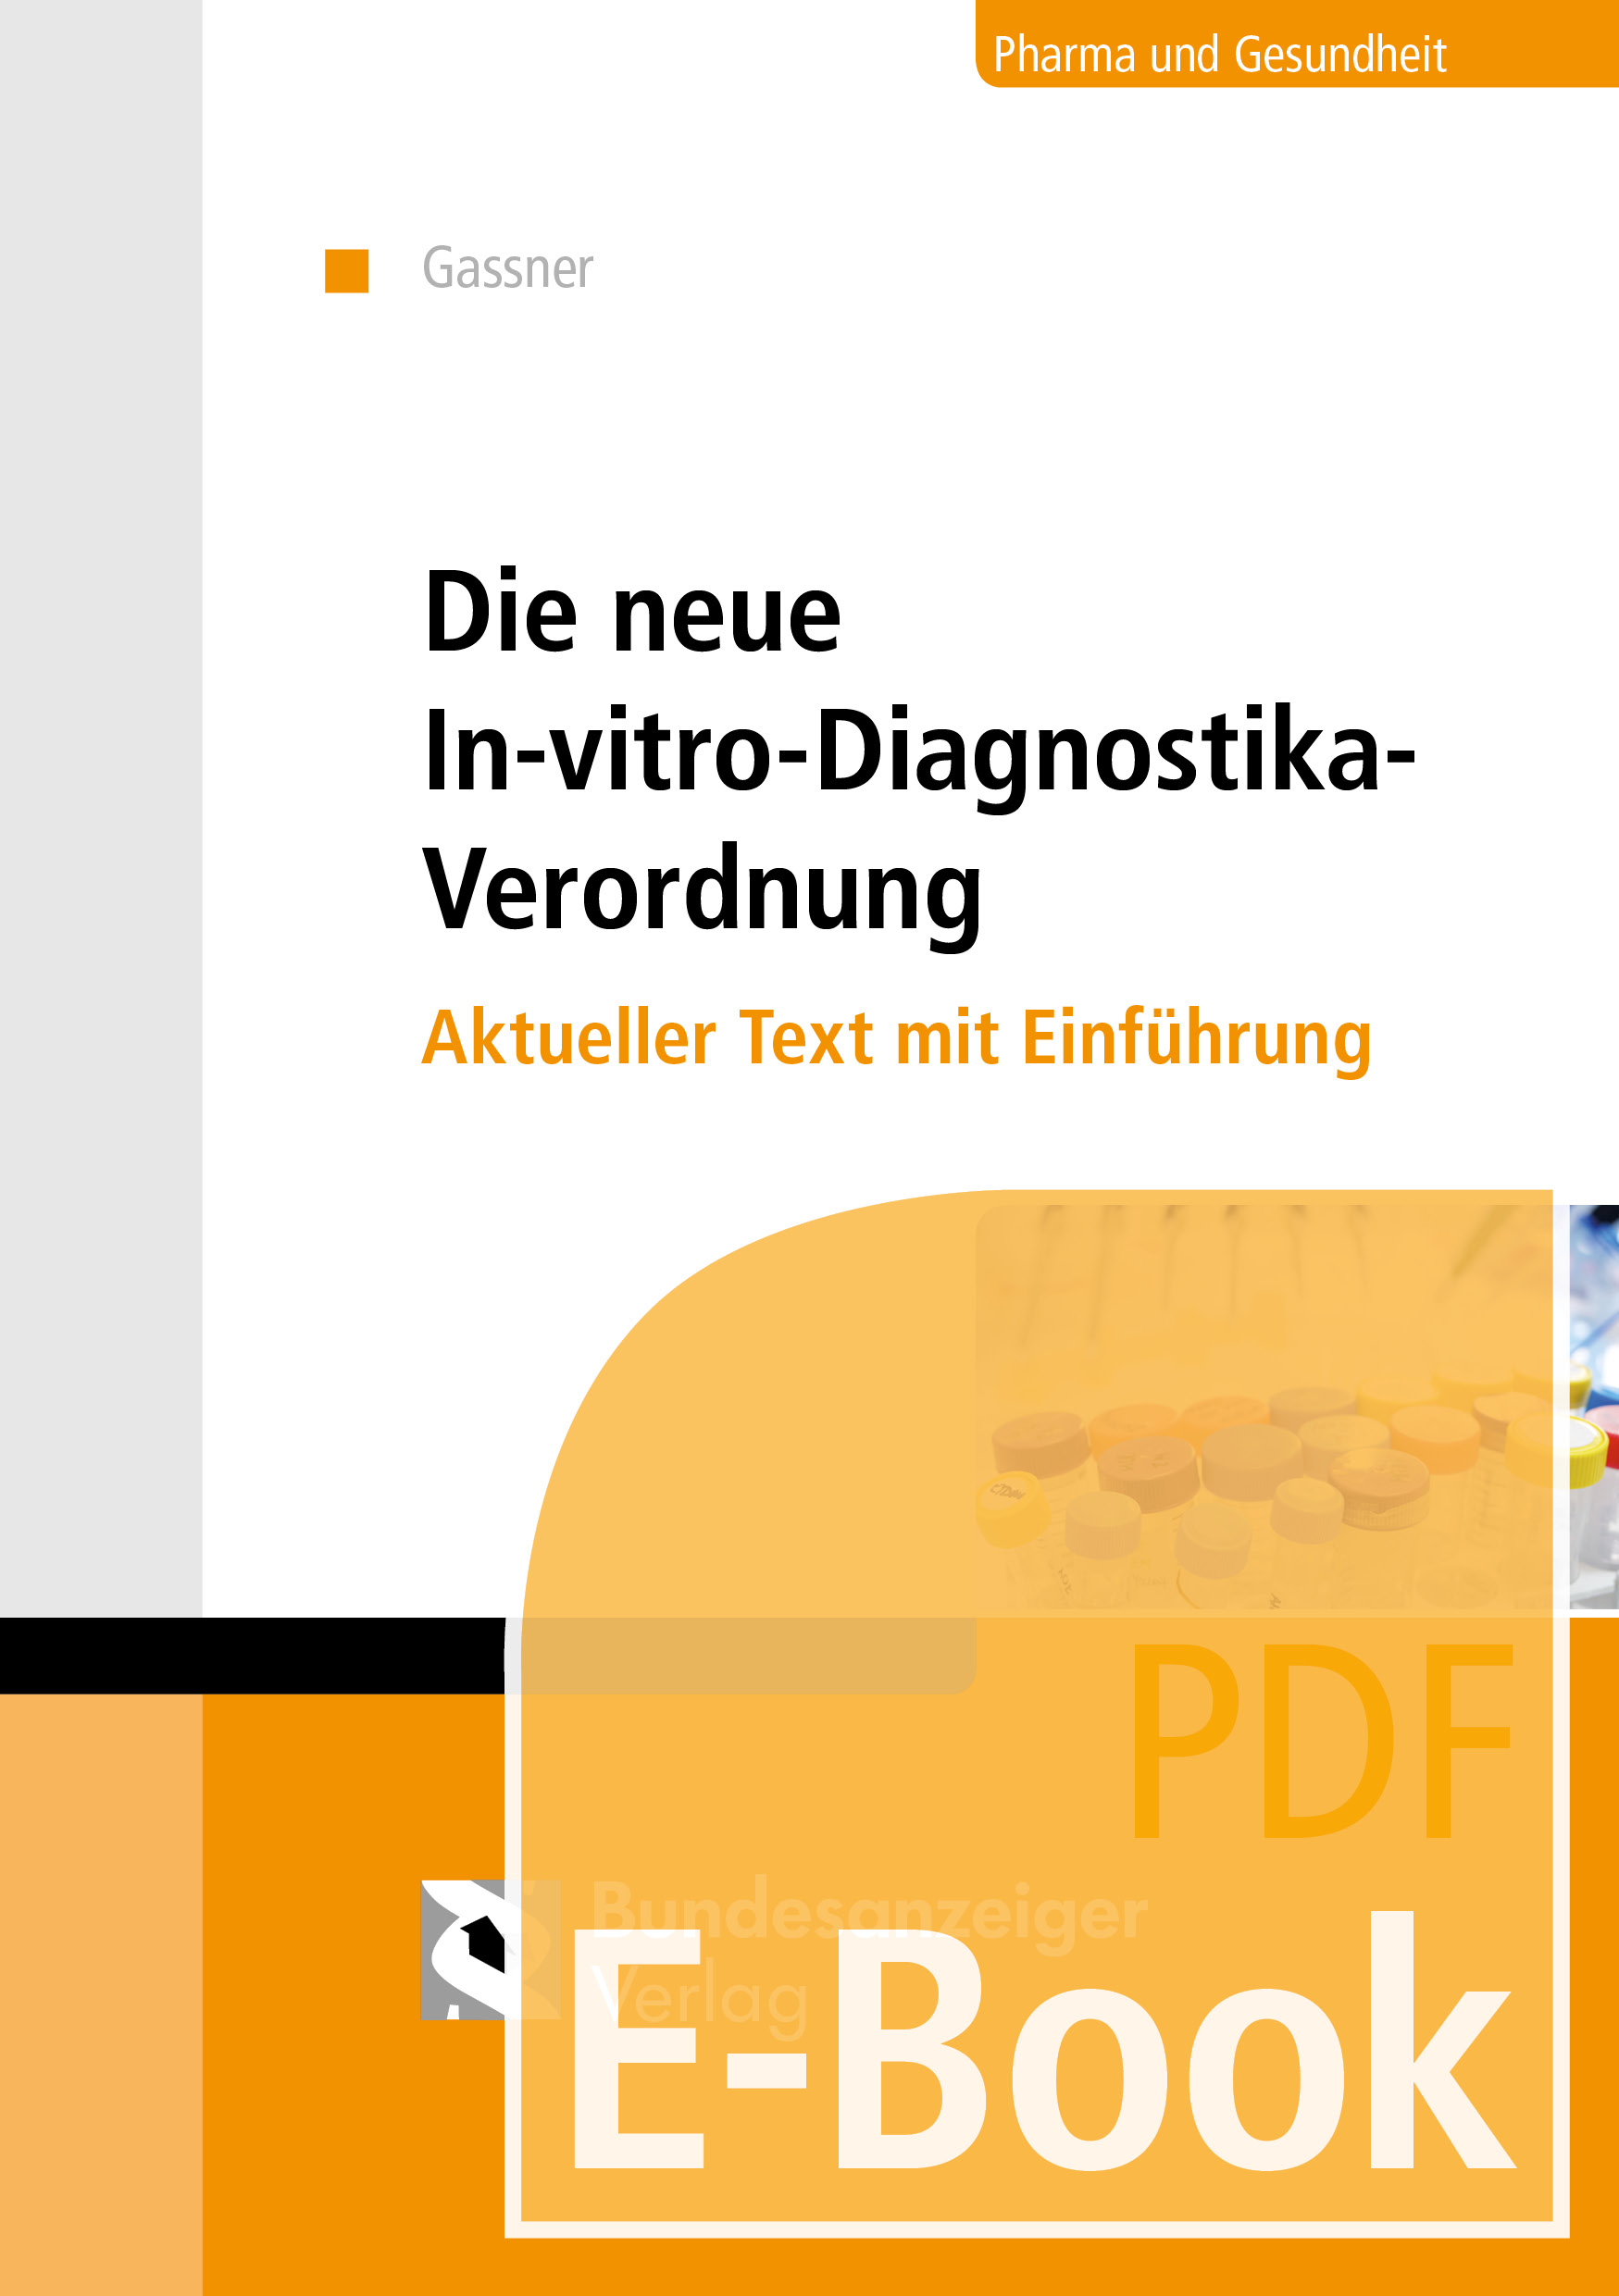 Die neue In-vitro-Diagnostika-Verordnung (E-Book)